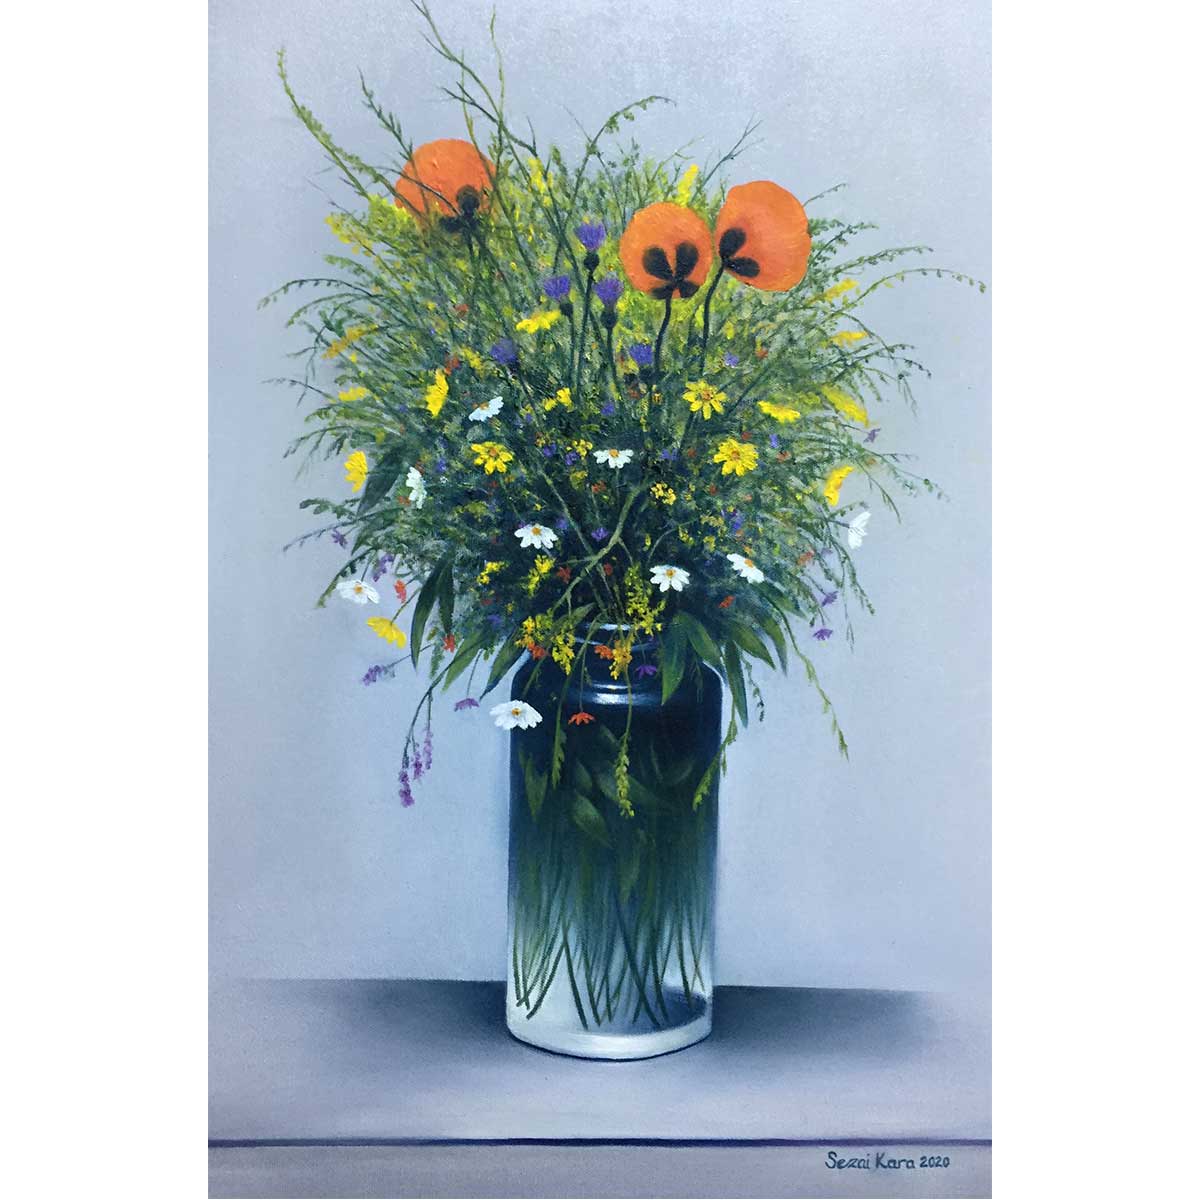 SEZAİ KARA, Kır Çiçekleri, 2020